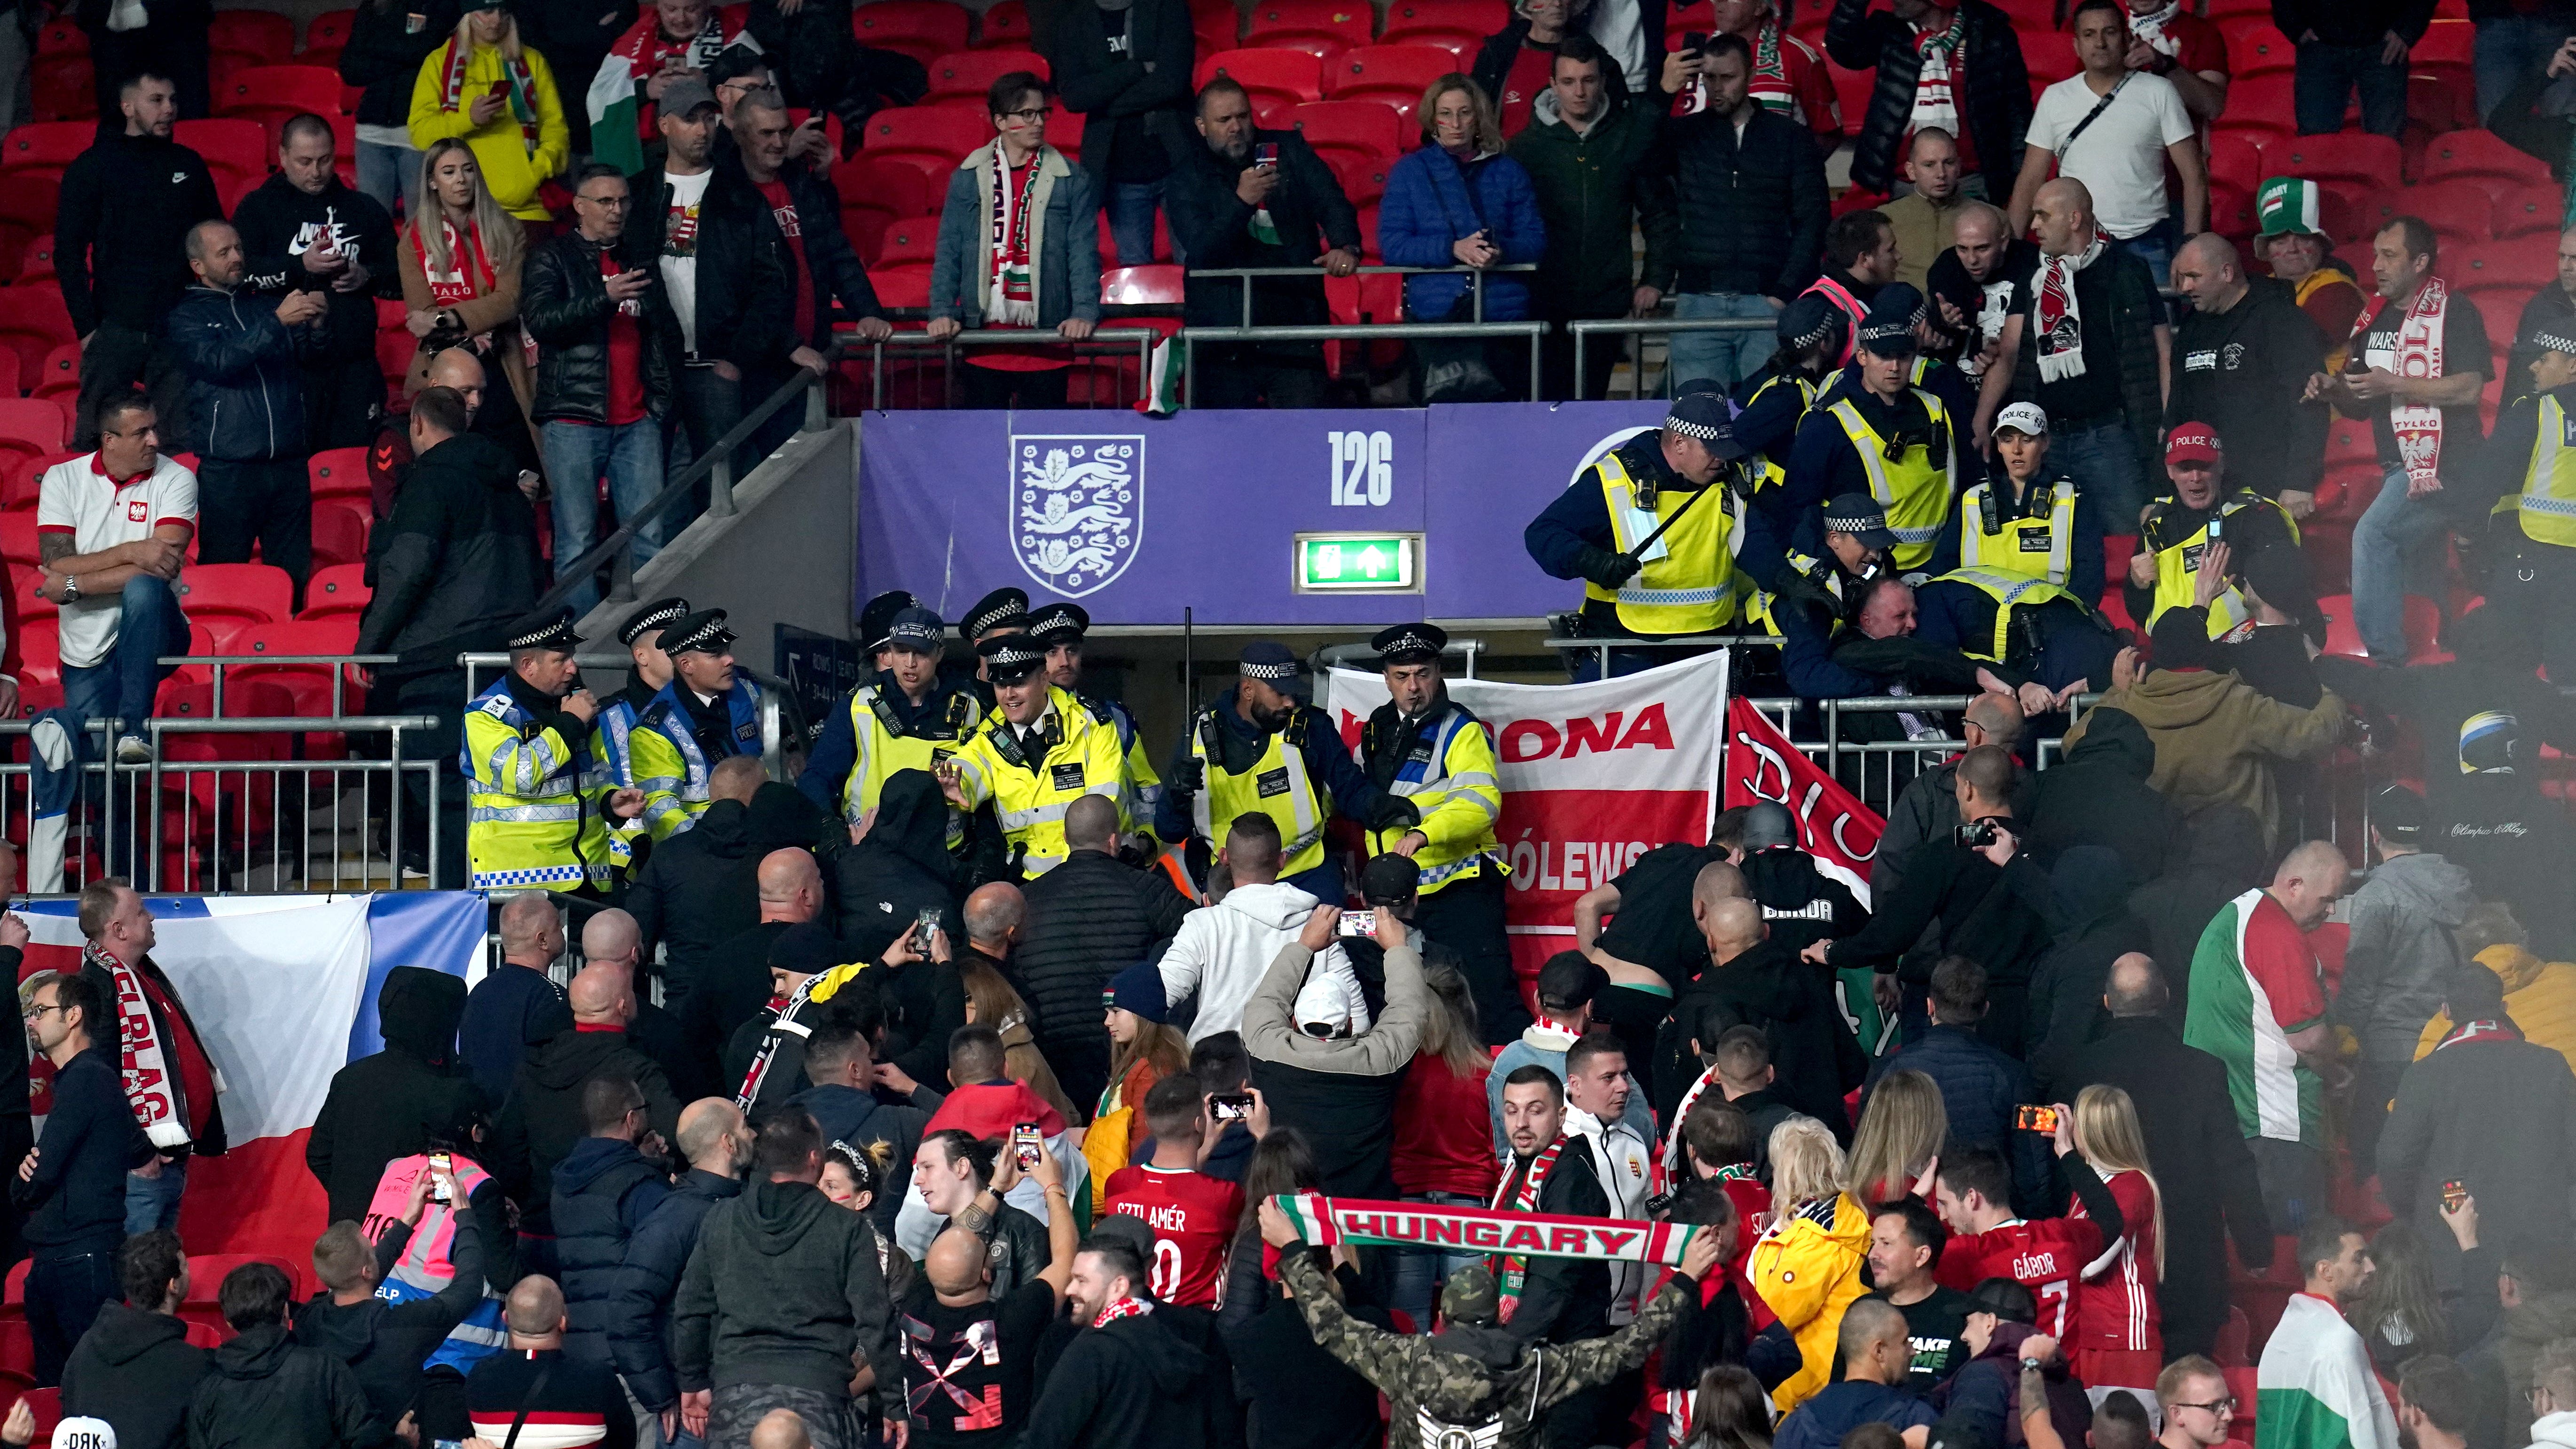 Inghilterra trattenuta mentre i tifosi dell’Ungheria si sono scontrati con la polizia a Wembley